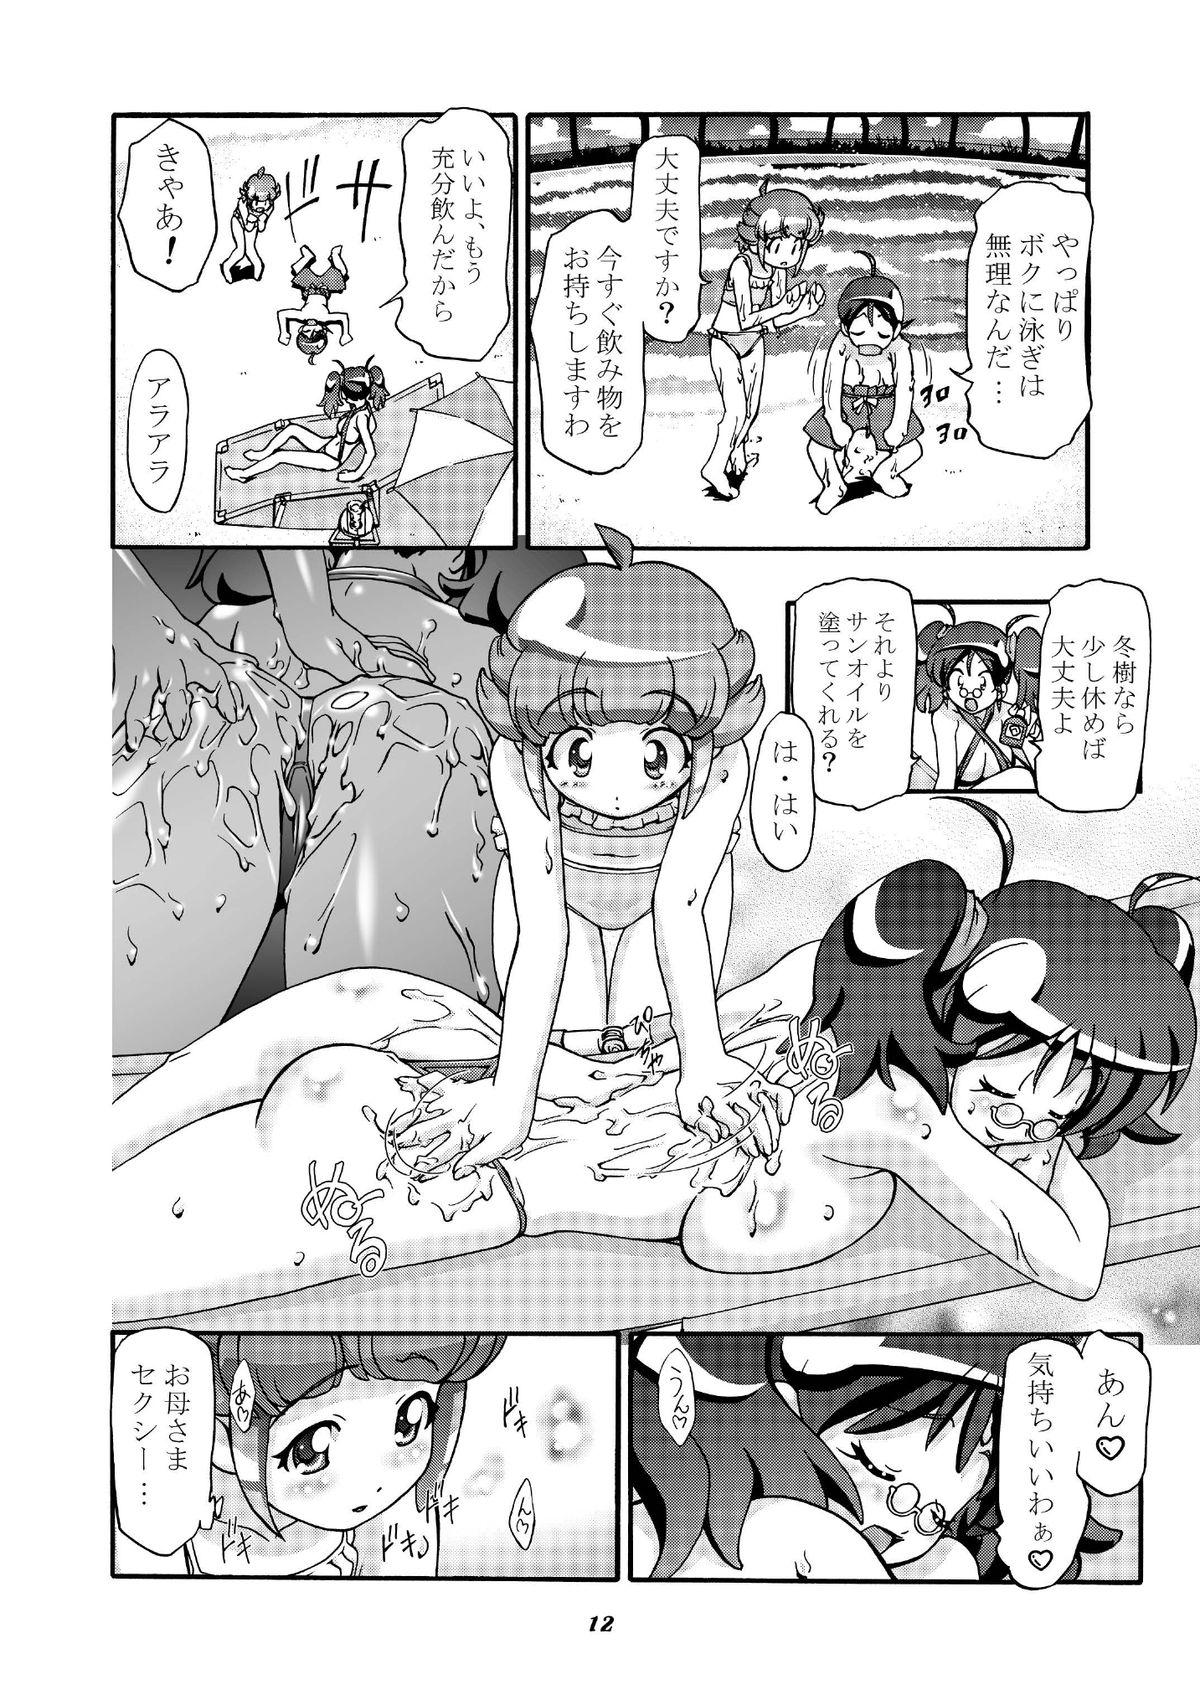 Coeds Aki Momo - Autumn Peach - Keroro gunsou Public Nudity - Page 11